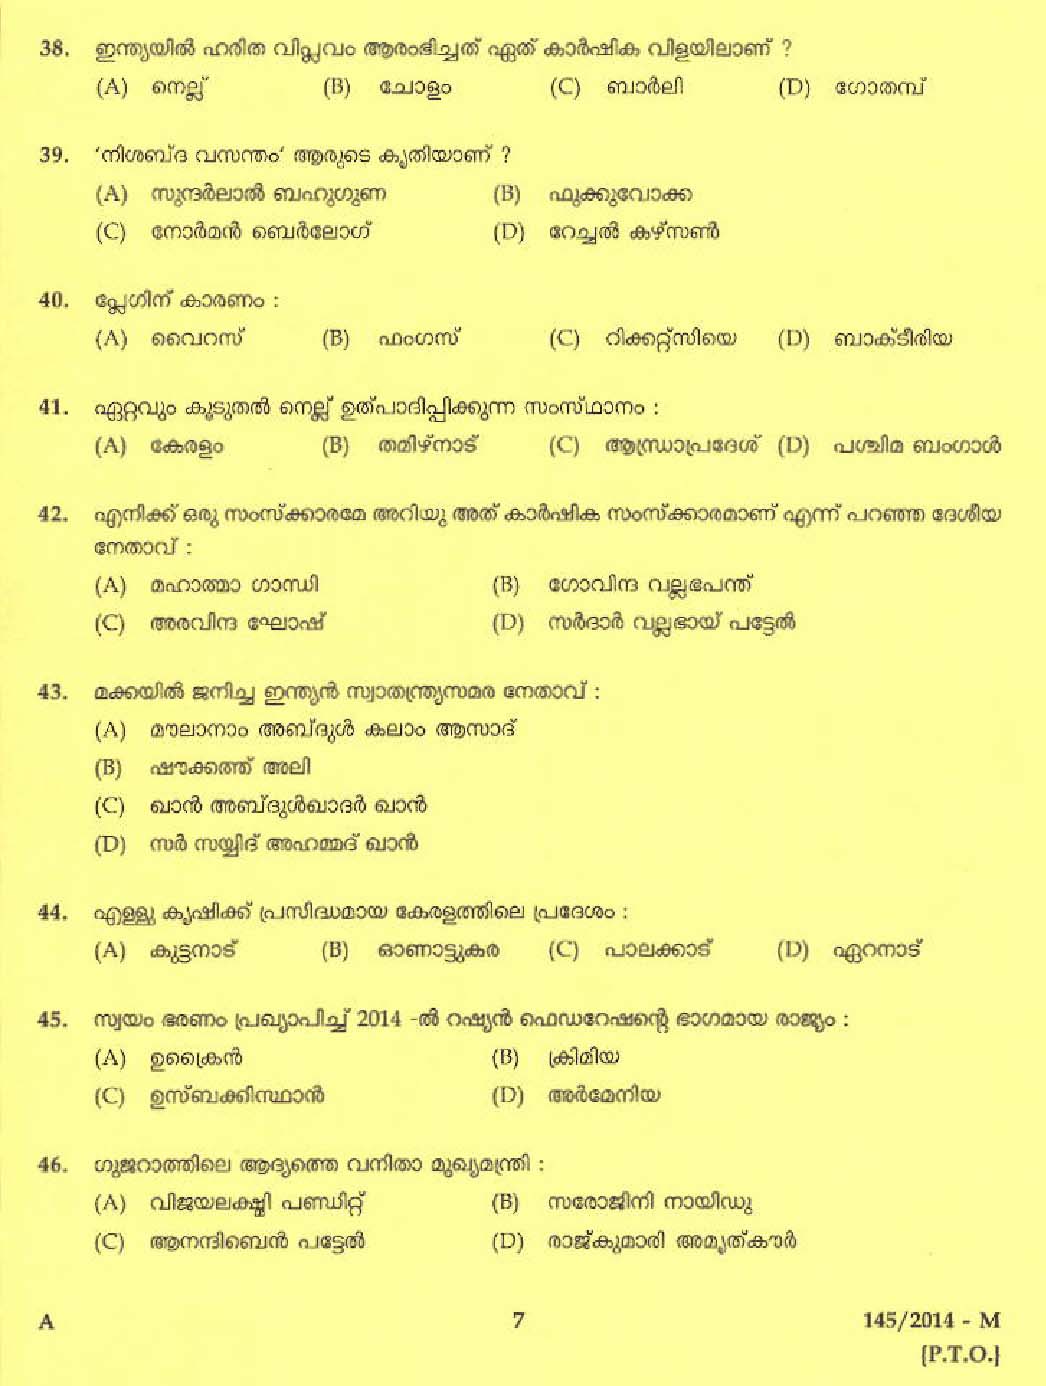 Kerala PSC Driver Grade II Exam 2014 Question Paper Code 1452014 M 5